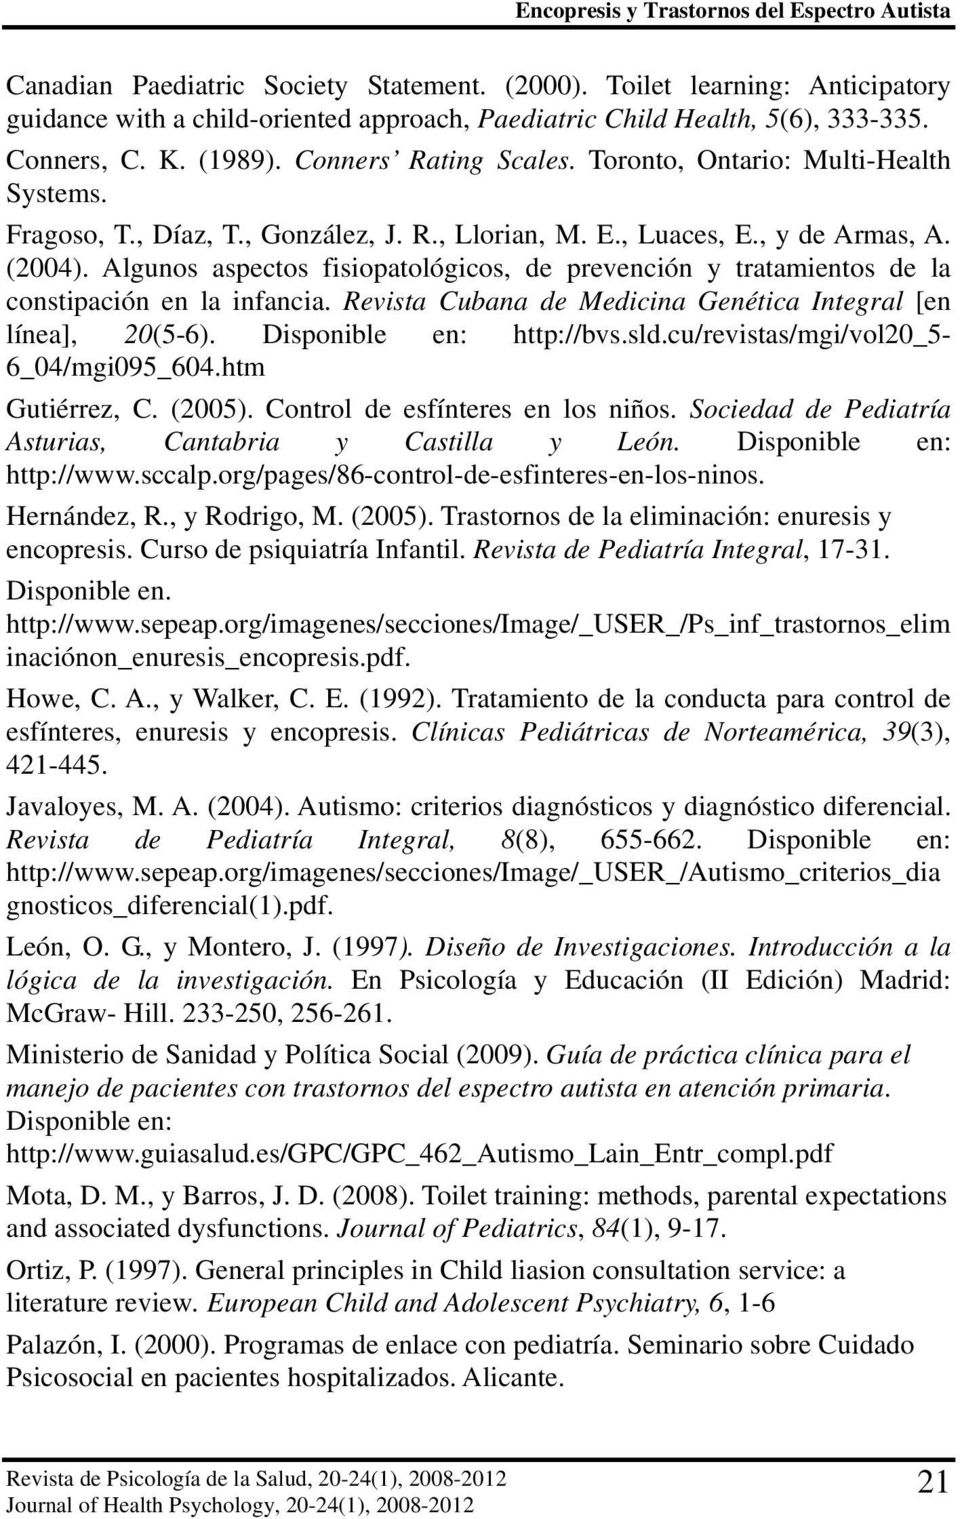 Fragoso, T., Díaz, T., González, J. R., Llorian, M. E., Luaces, E., y de Armas, A. (2004). Algunos aspectos fisiopatológicos, de prevención y tratamientos de la constipación en la infancia.